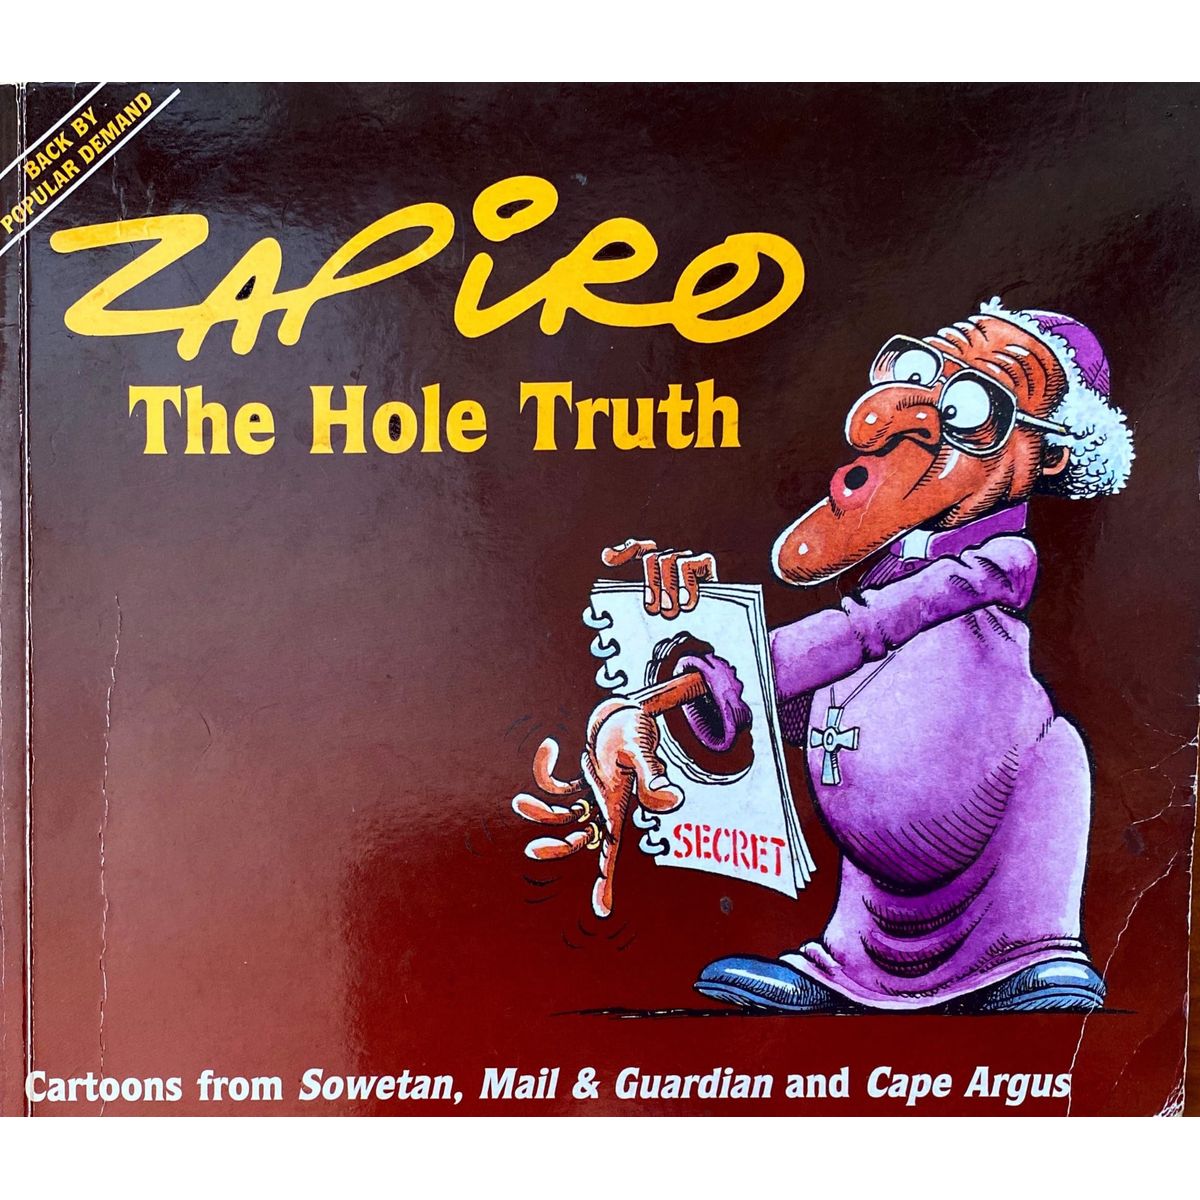 ISBN: 9780864863522 / 0864863527 - Zapiro: The Hole Truth by Jonathan Shapiro [1997]